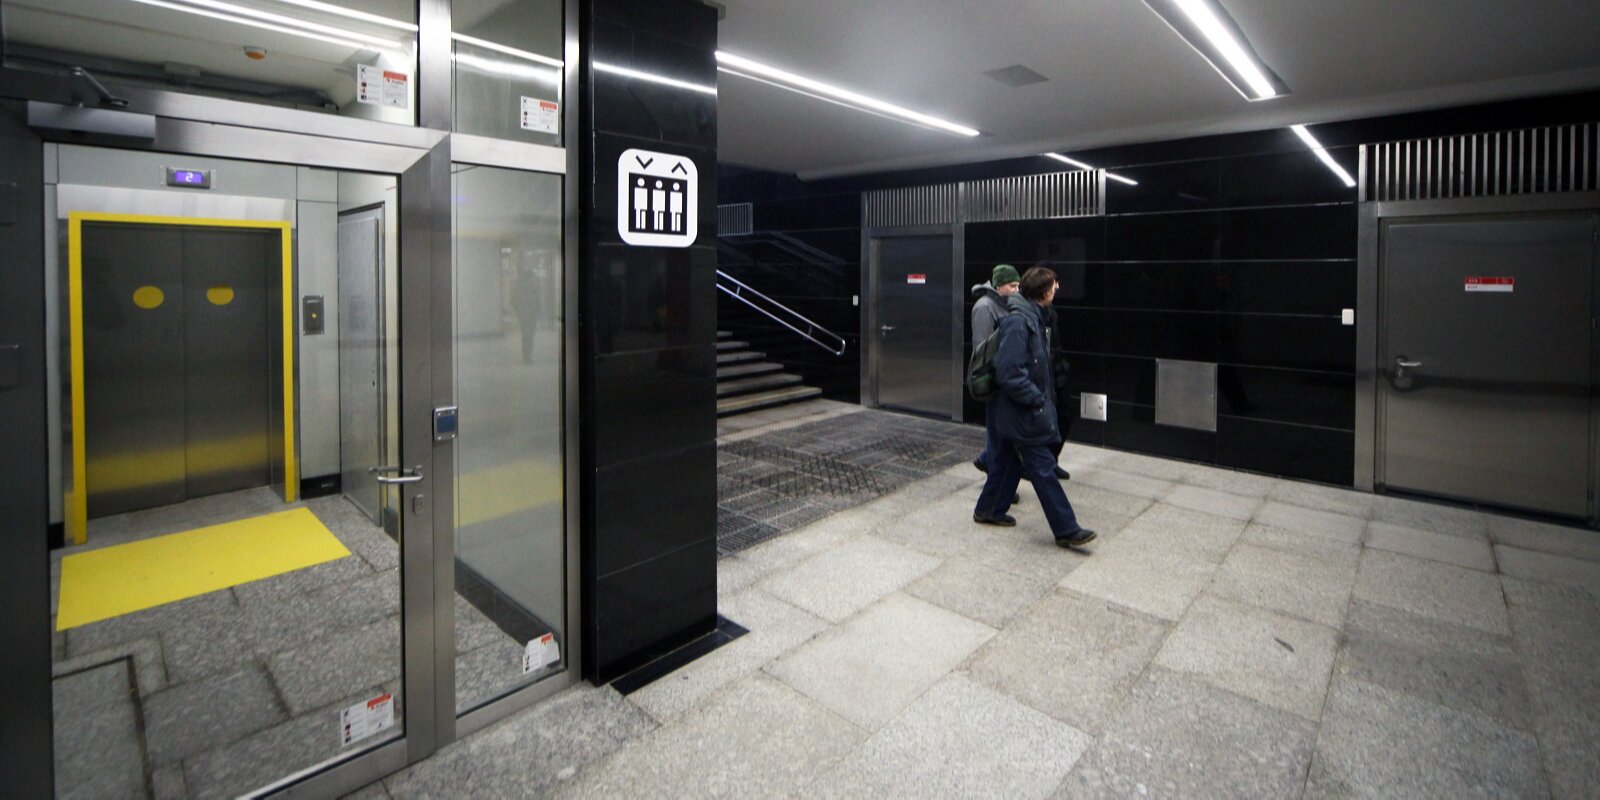 Для маломобильных категорий граждан в столице появилось 16 лифтов. Фото: сайт мэра Москвы